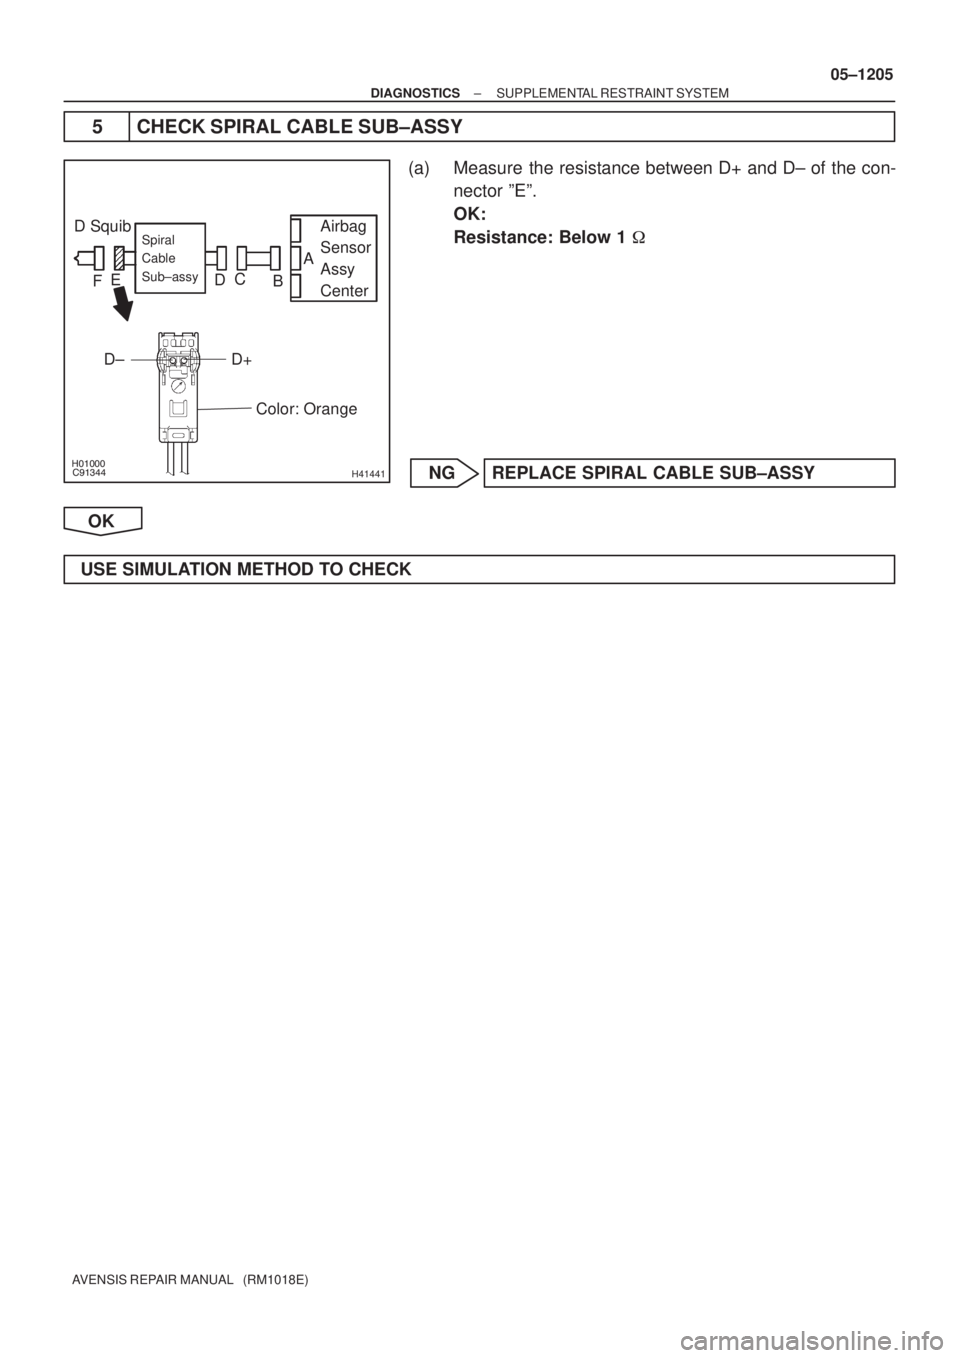 TOYOTA AVENSIS 2005  Service Repair Manual 
H41441
D Squib Airbag
Sensor
Assy
CenterSpiral
Cable
Sub±assy
Color: Orange
A
B C
D E
F
D+ D±
± DIAGNOSTICSSUPPLEMENTAL RESTRAINT SYSTEM
05±1205
AVENSIS REPAIR MANUAL   (RM1018E)
5 CH